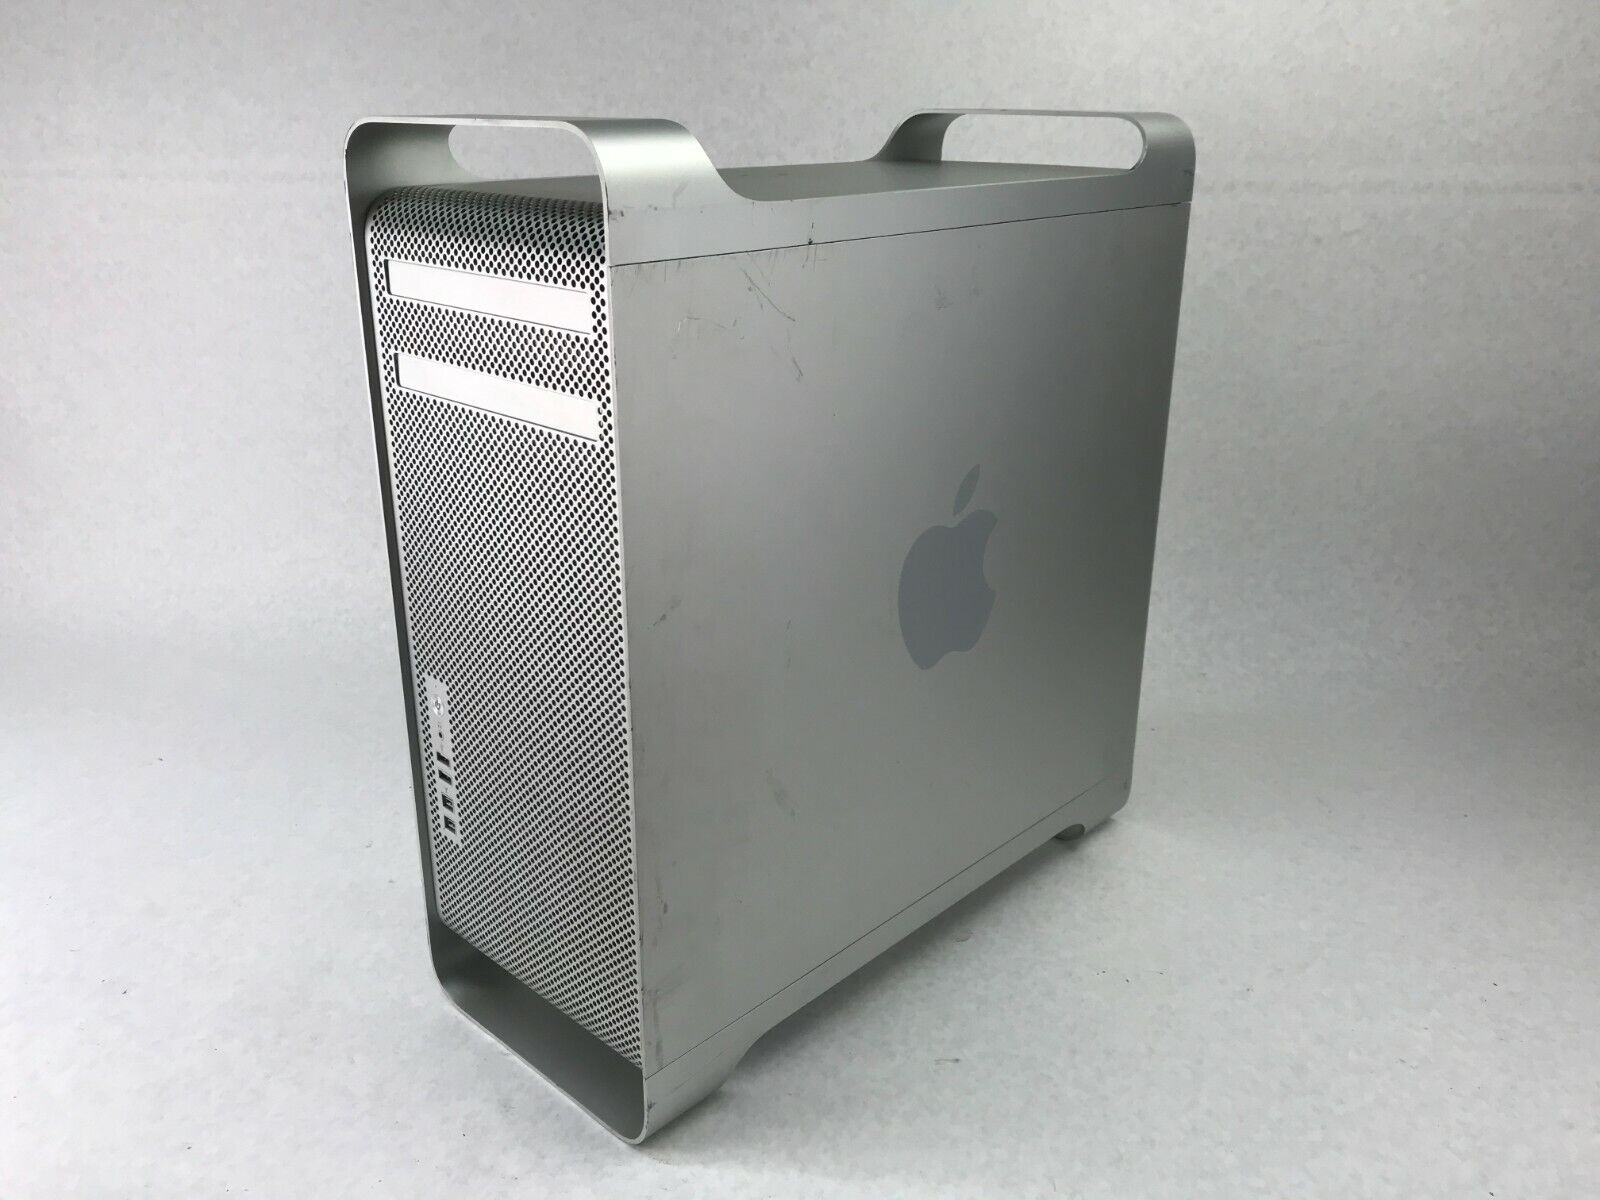 Apple Mac Pro A1289 2010 Intel Xeon Quad Core 2.8GHz 32GB RAM 64GB SSD